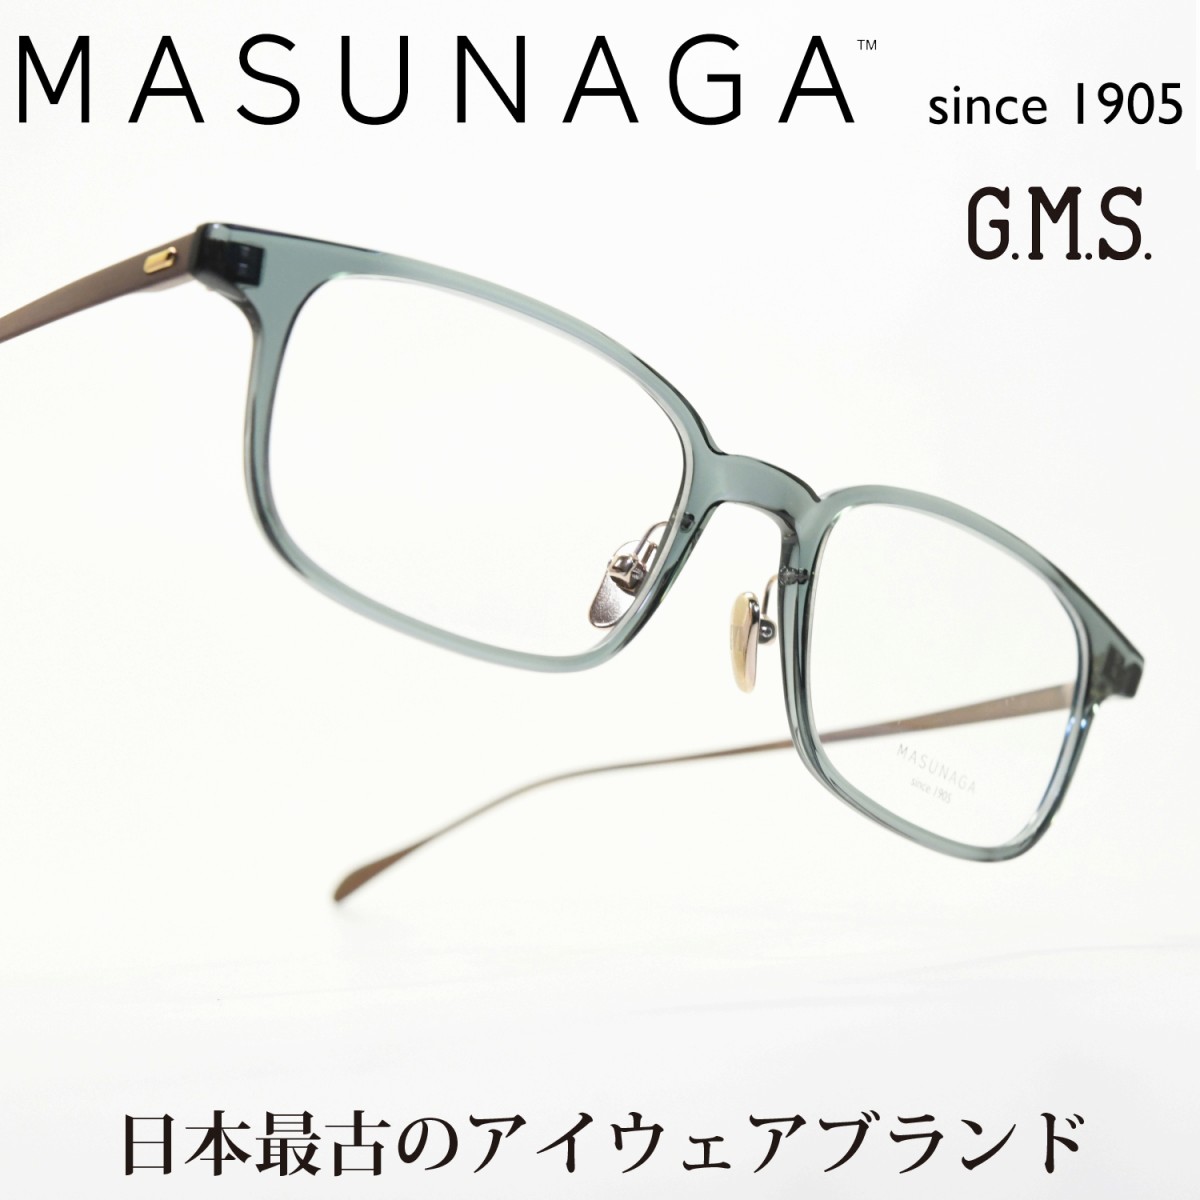 増永眼鏡 MASUNAGA GMS 18 col-48 LGRN